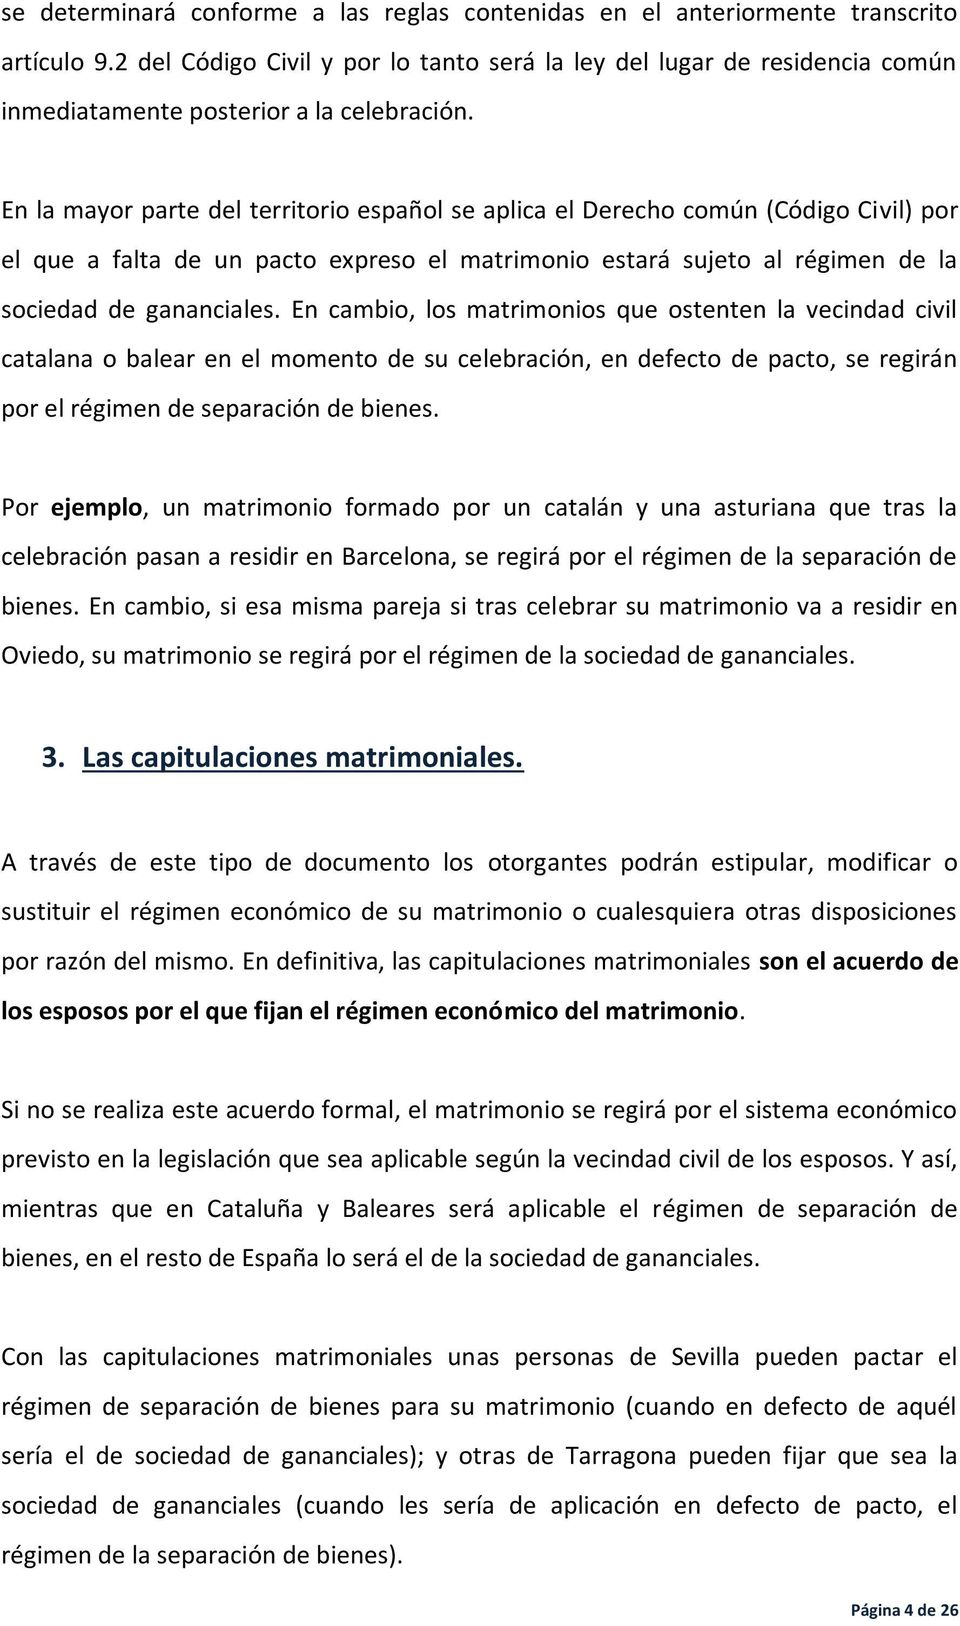 En la mayor parte del territorio español se aplica el Derecho común (Código Civil) por el que a falta de un pacto expreso el matrimonio estará sujeto al régimen de la sociedad de gananciales.